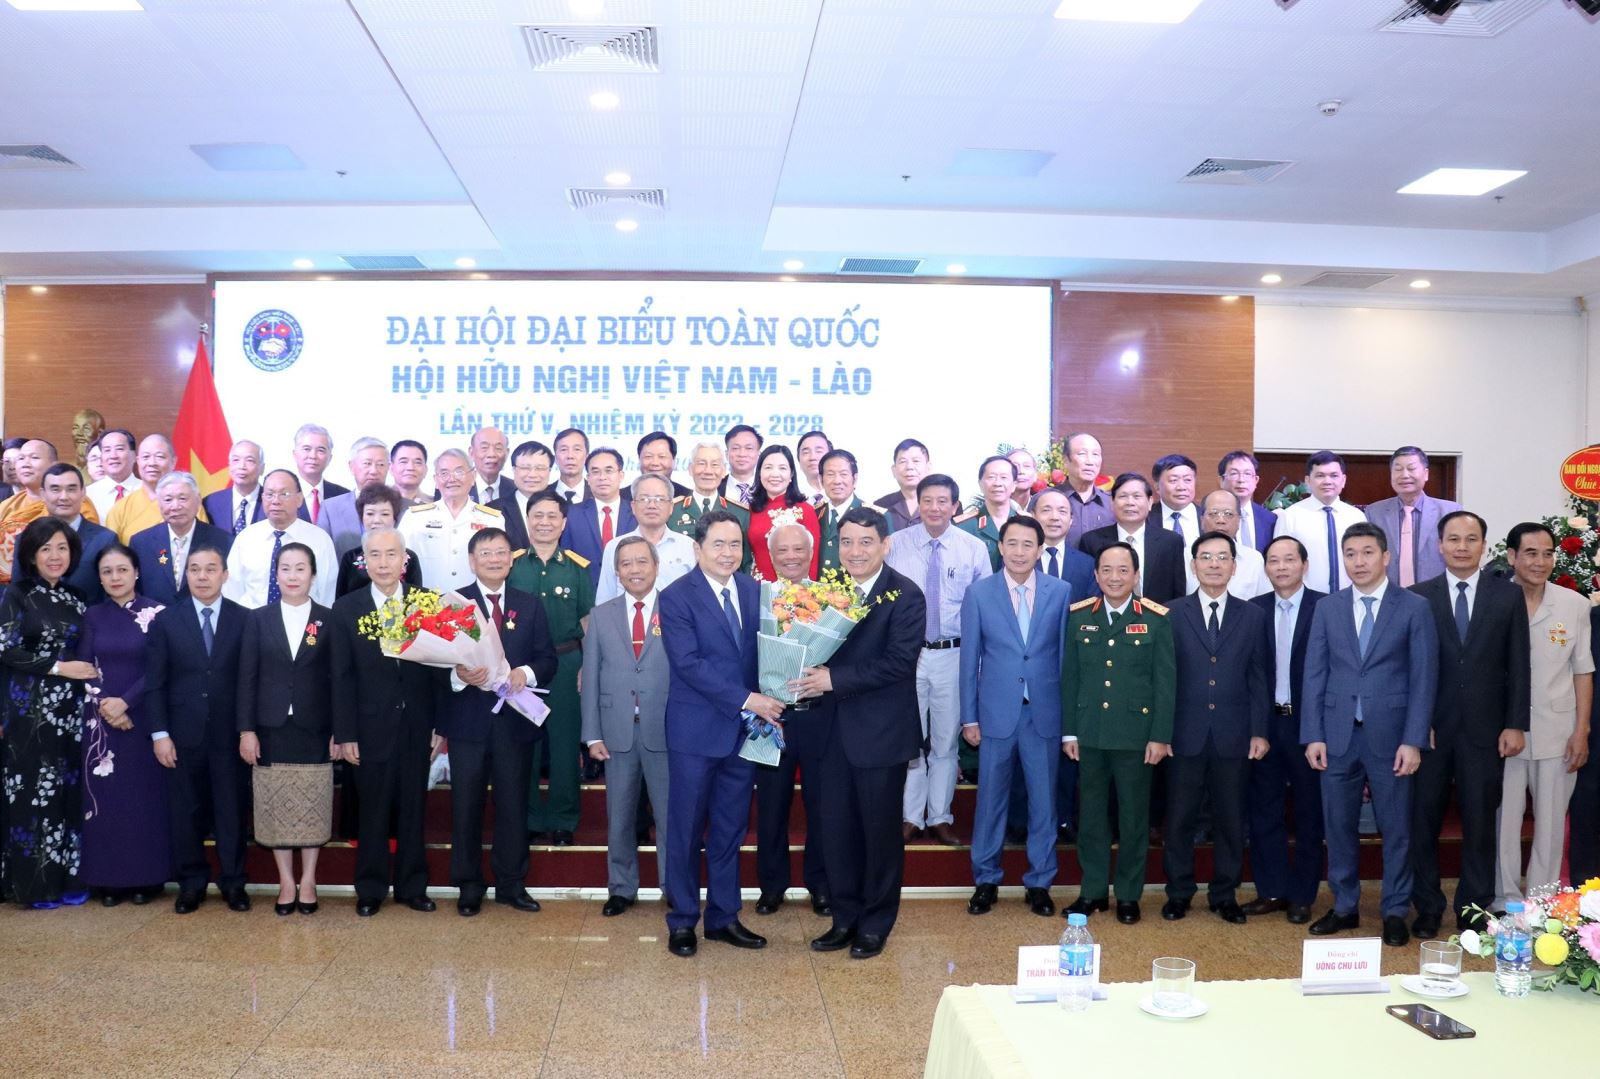 Đại hội đại biểu toàn quốc lần thứ V Hội hữu nghị Việt Nam - Lào